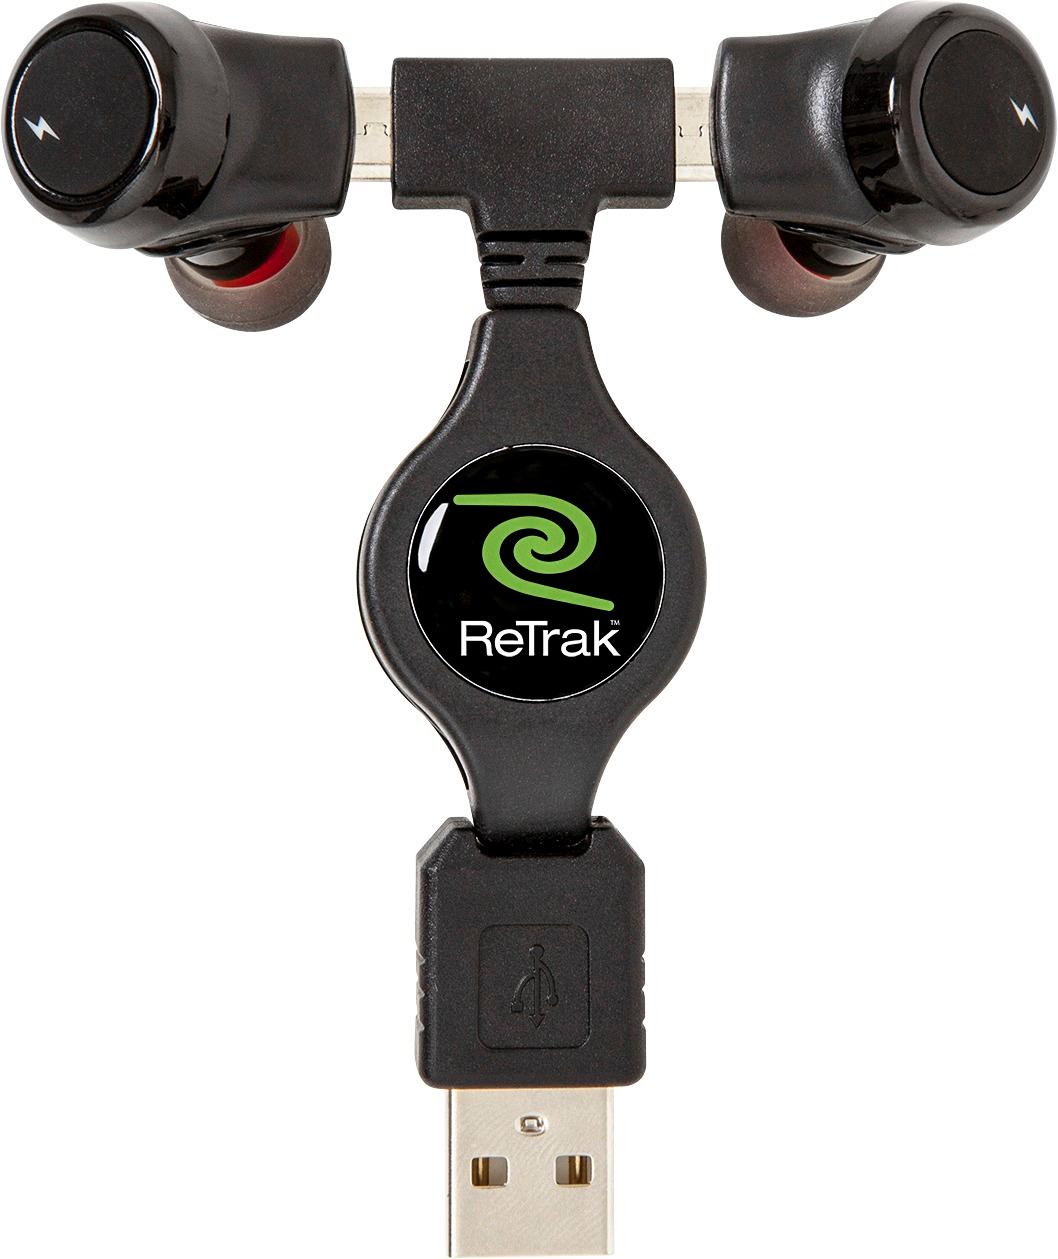 Left View: ReTrak - ReTrack Remixd True Wireless In-Ear Headphones - Black